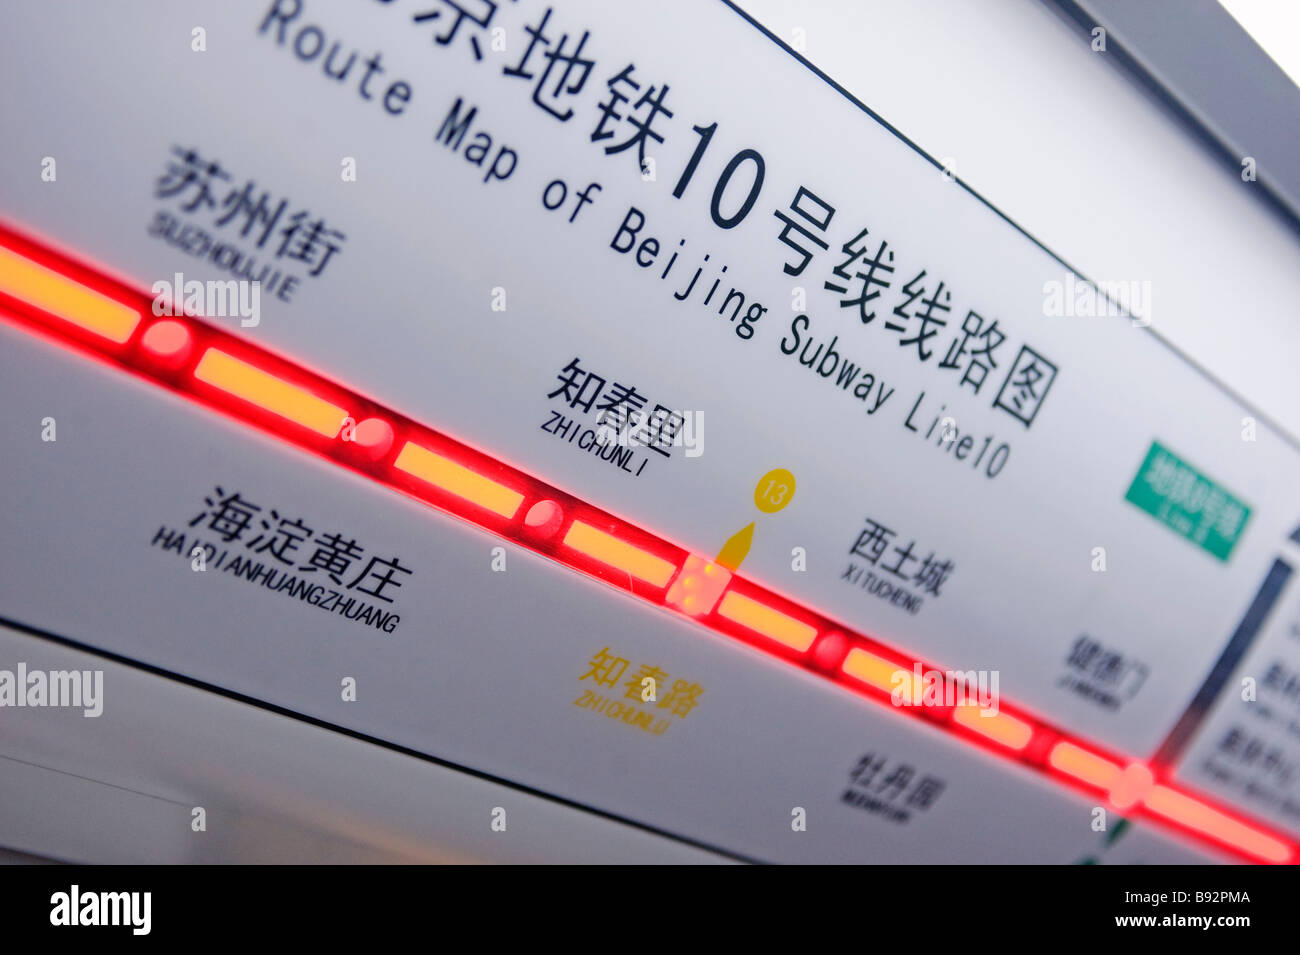 Détail de l'itinéraire dans l'affichage électronique nouvelle rame de métro sur la ligne 10 à Beijing Banque D'Images